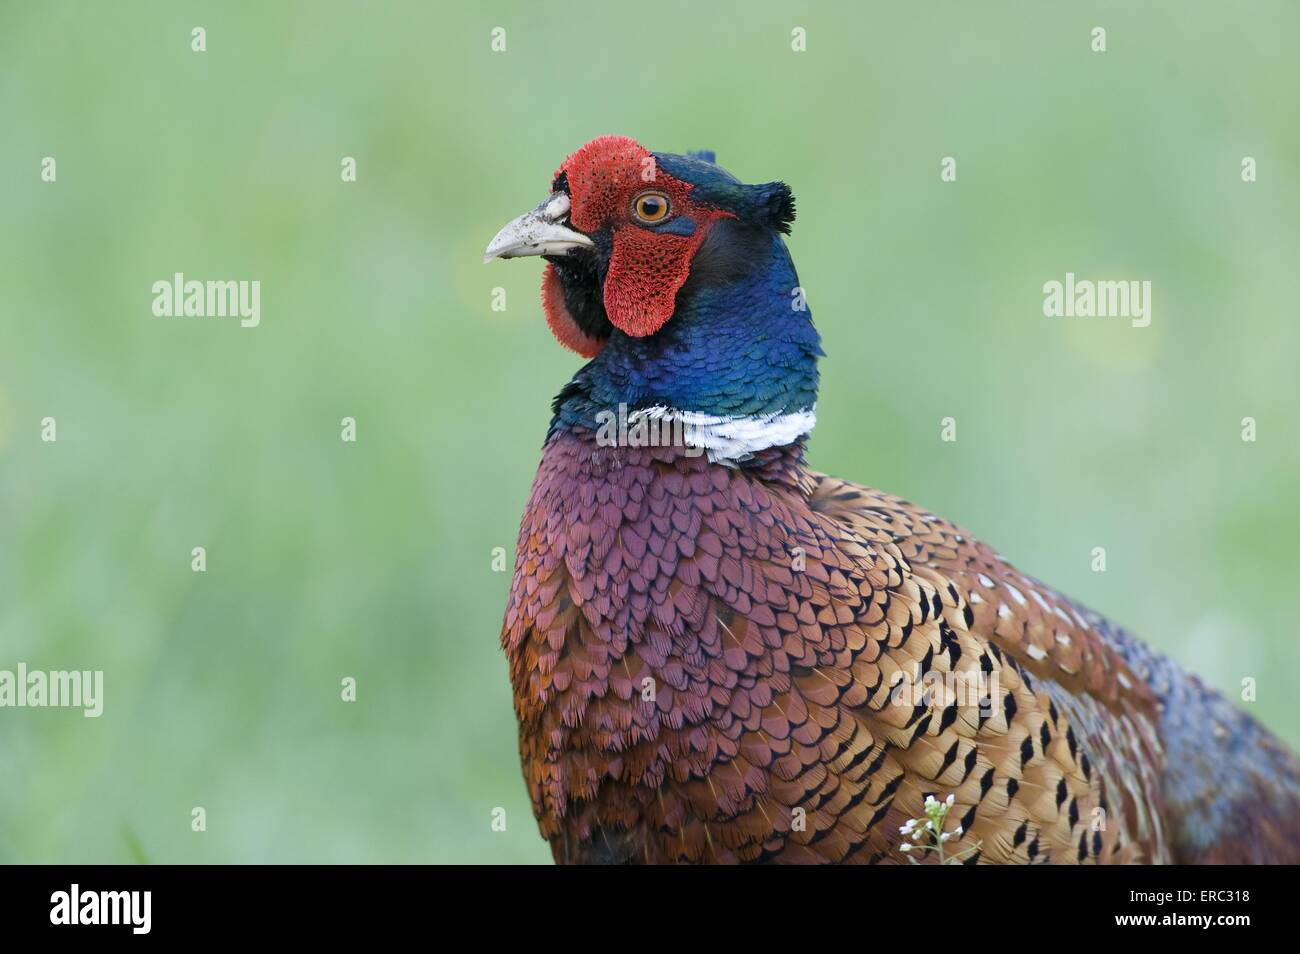 common pheasant Stock Photo